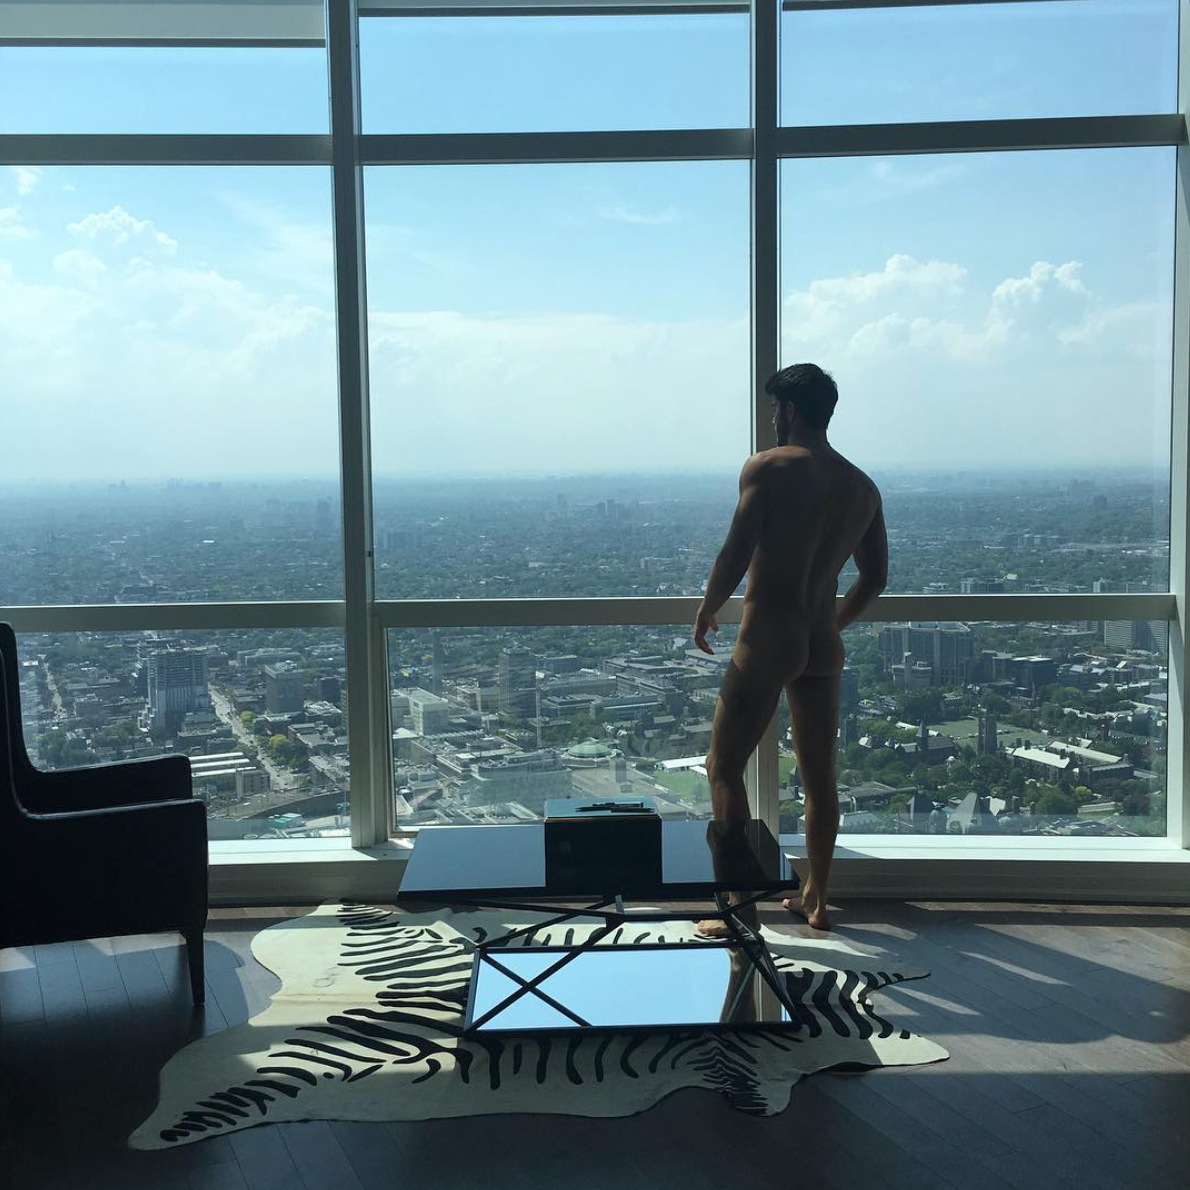 El modelo Nick Bateman se desnuda en Instagram